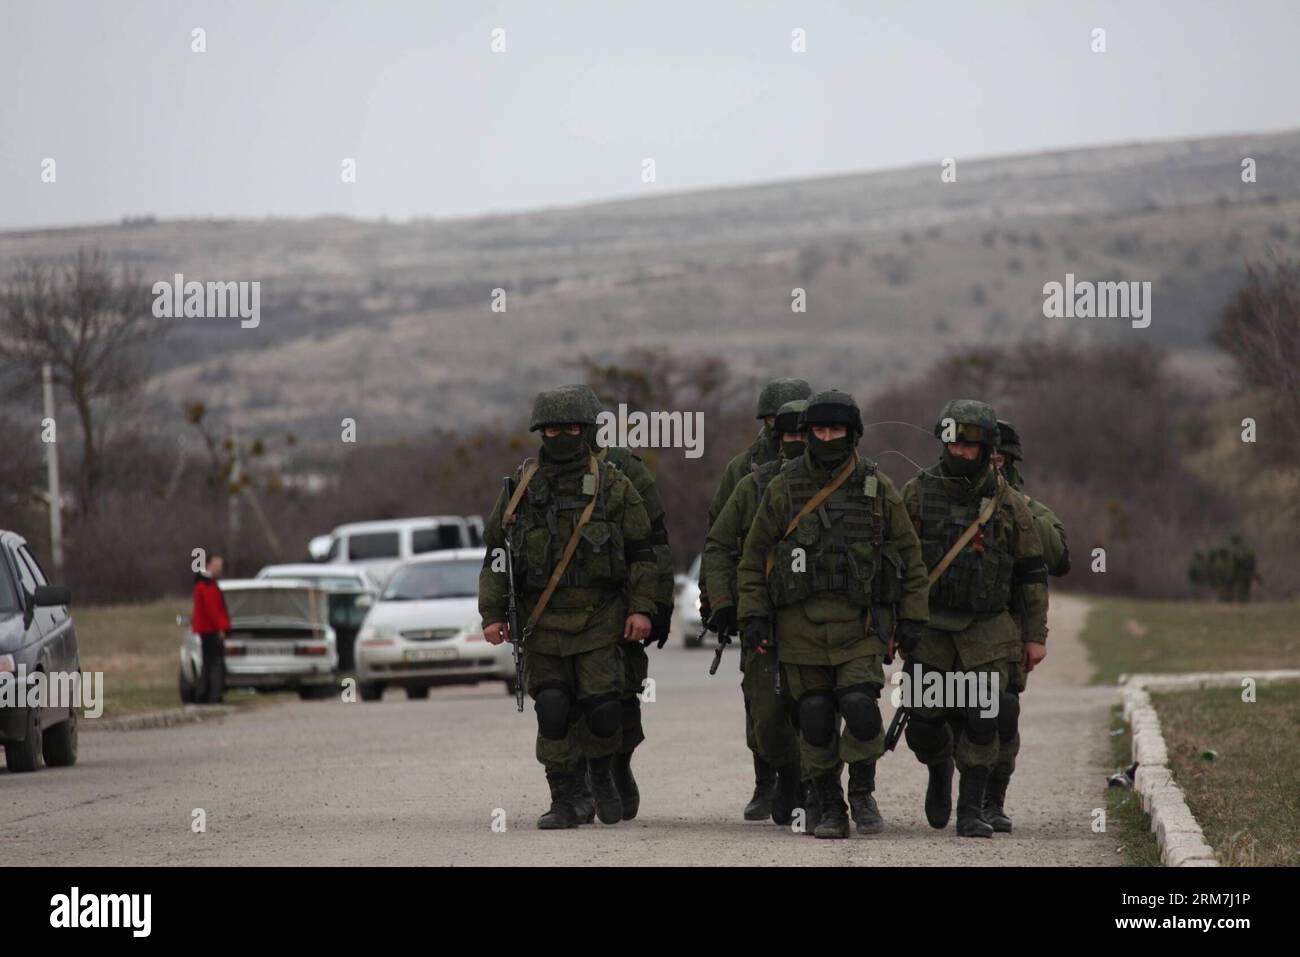 (140305) -- SIMFEROPOL, 5. März 2014 (Xinhua) -- bewaffnete Männer gehen vor einer ukrainischen Militäreinheit in der Vorstadt Simferopol, der Hauptstadt der autonomen republik Krim der Ukraine, am 4. März 2014. (Xinhua/Wei Dafang) (lyx) UKRAINE-SIMFEROPOL-MILITÄREINHEIT BEWAFFNETE MÄNNER PUBLICATIONxNOTxINxCHN Simferopol 5. März 2014 XINHUA BEWAFFNETE Männer gehen vor einer ukrainischen Militäreinheit in der Vorstadt Simferopol Hauptstadt der Ukraine S Autonome Republik Krim 4. März 2014 XINHUNOWEI DAFINXINATIONCHN Armed Men SimxBLIxBLIxNNIxLUS Ukraine Militäreinheit Stockfoto